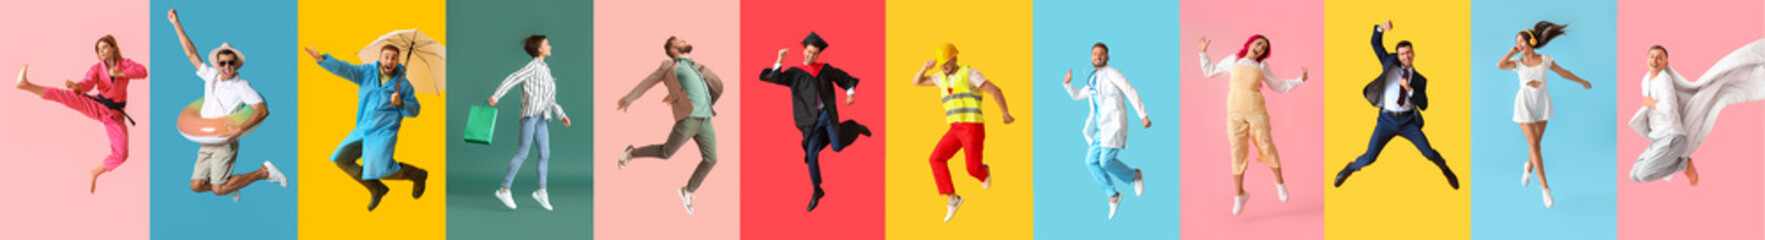 Collage springender junger Menschen auf farbigem Hintergrund